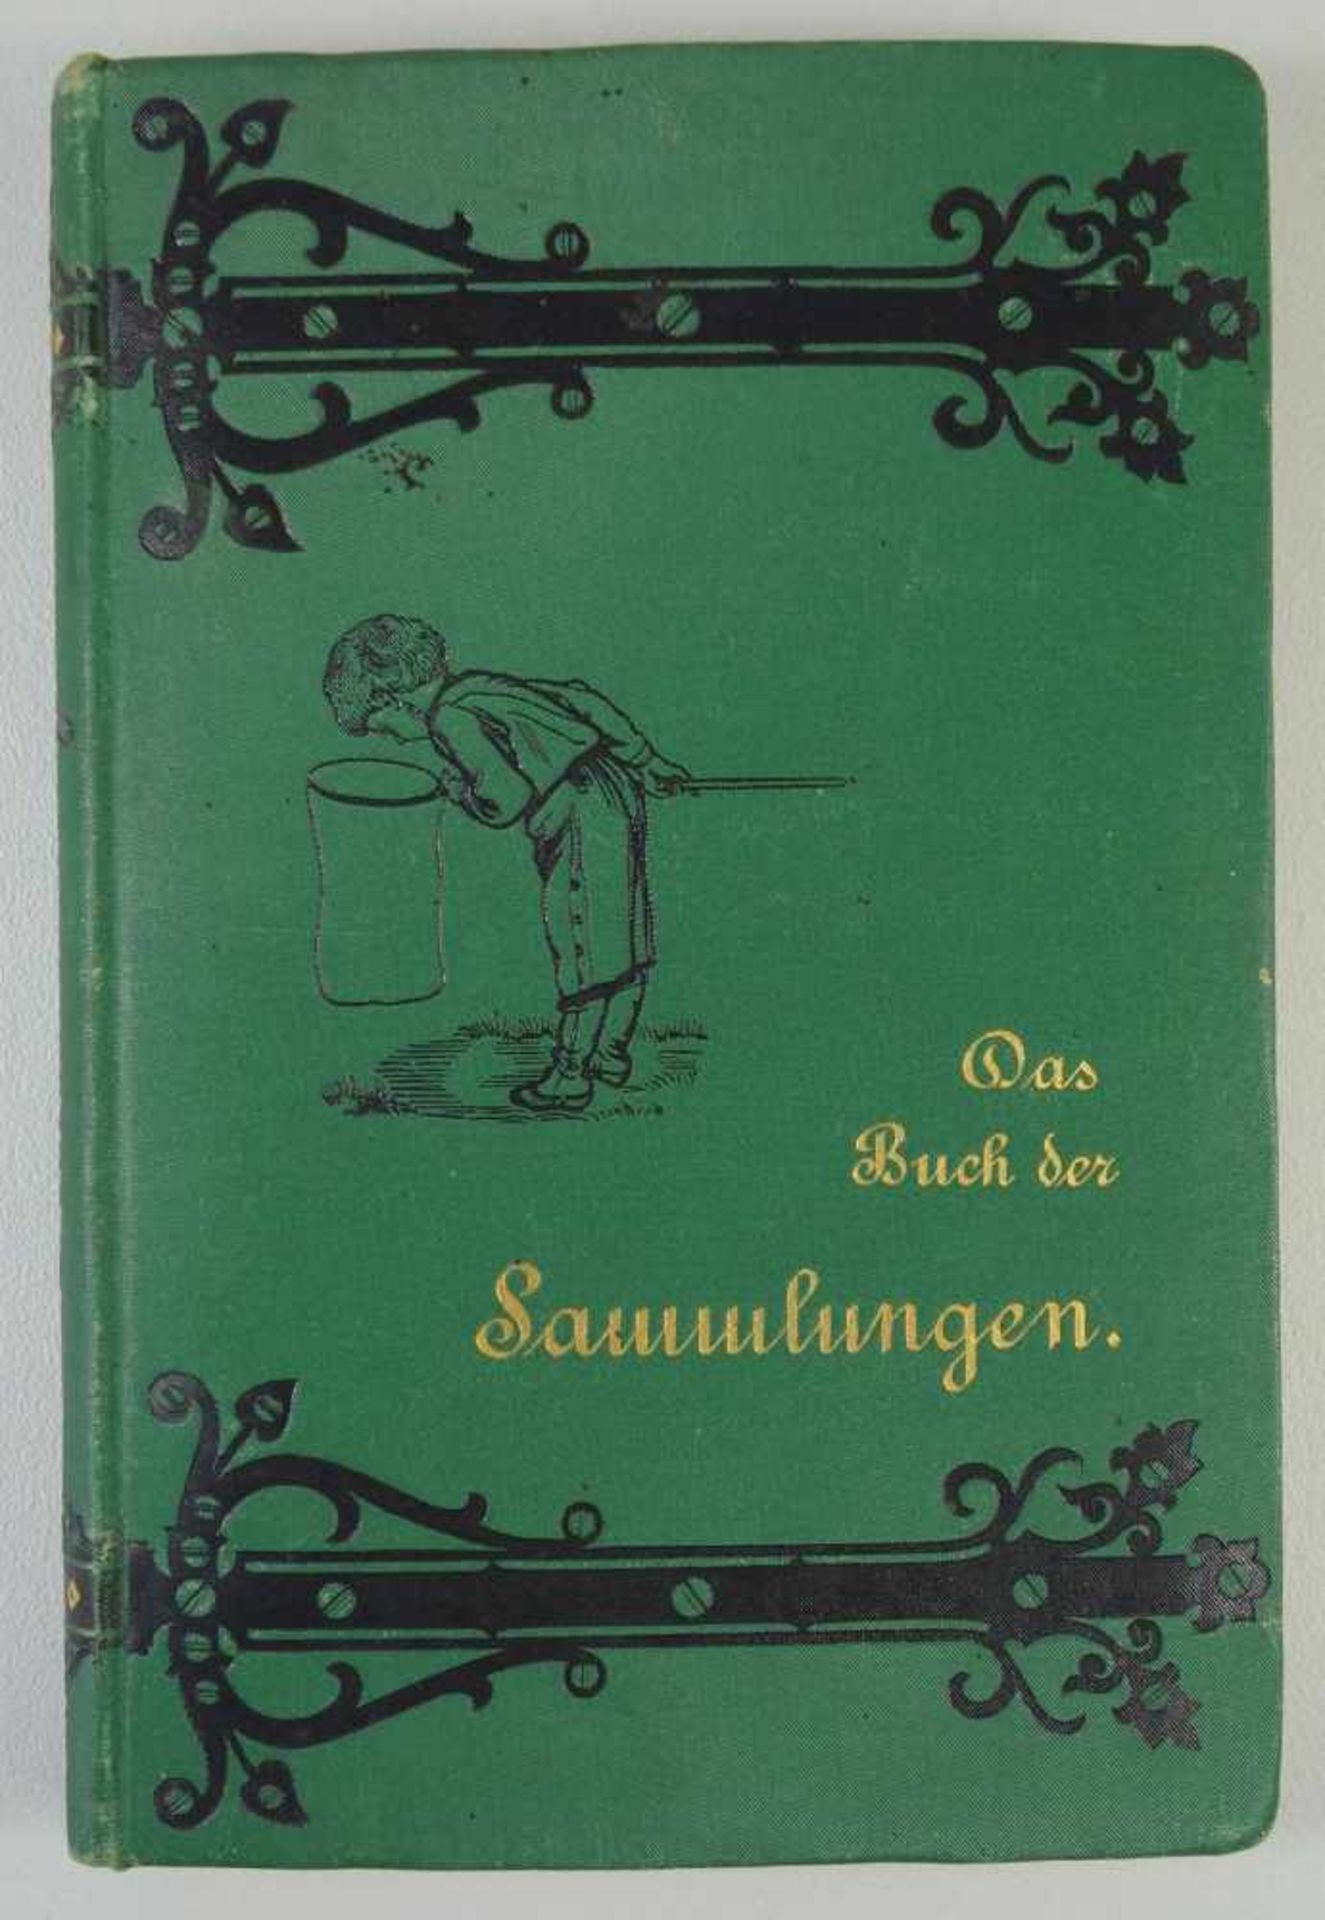 Das Buch der Sammlungen, Otto Klasing, 1883 praktische Anleitung zum Anlegen, Ordnen und Erhalten